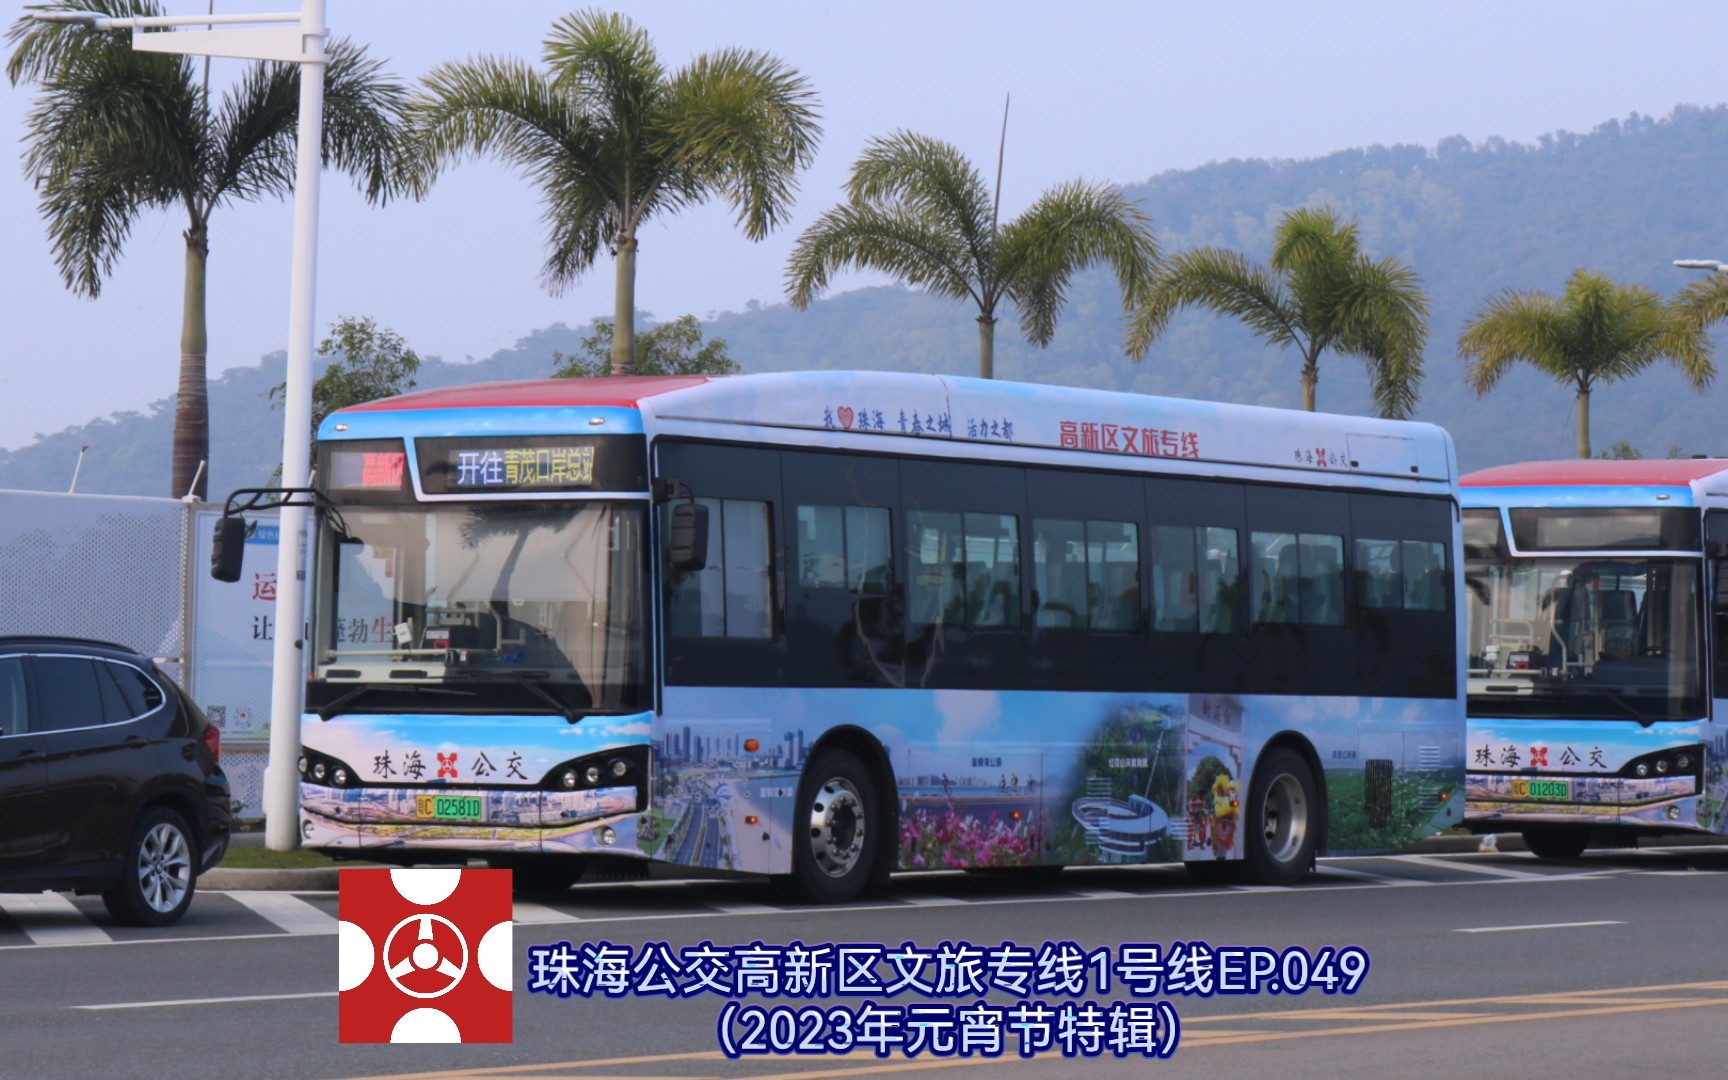 【2023年元宵特辑】【珠海公交】珠海观光巴士ep